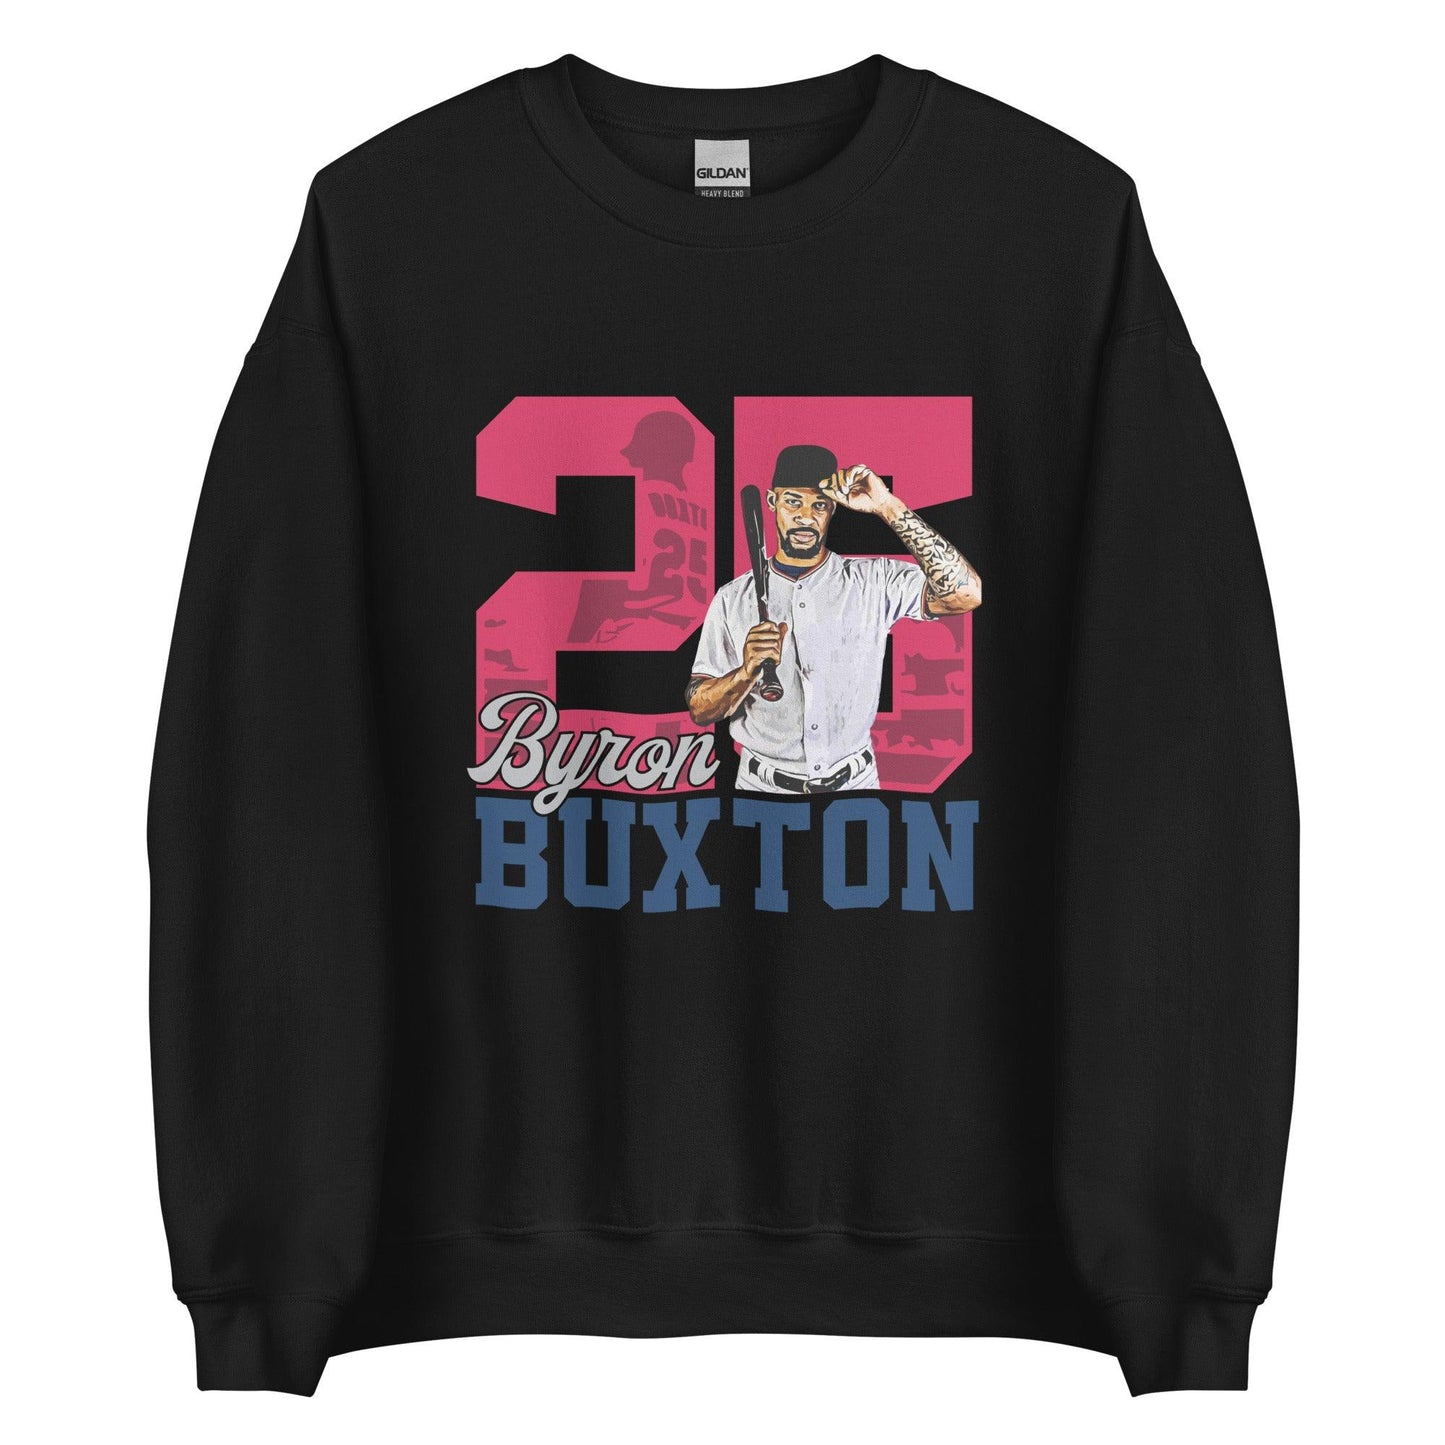 Byron Buxton "Legacy" Sweatshirt - Fan Arch